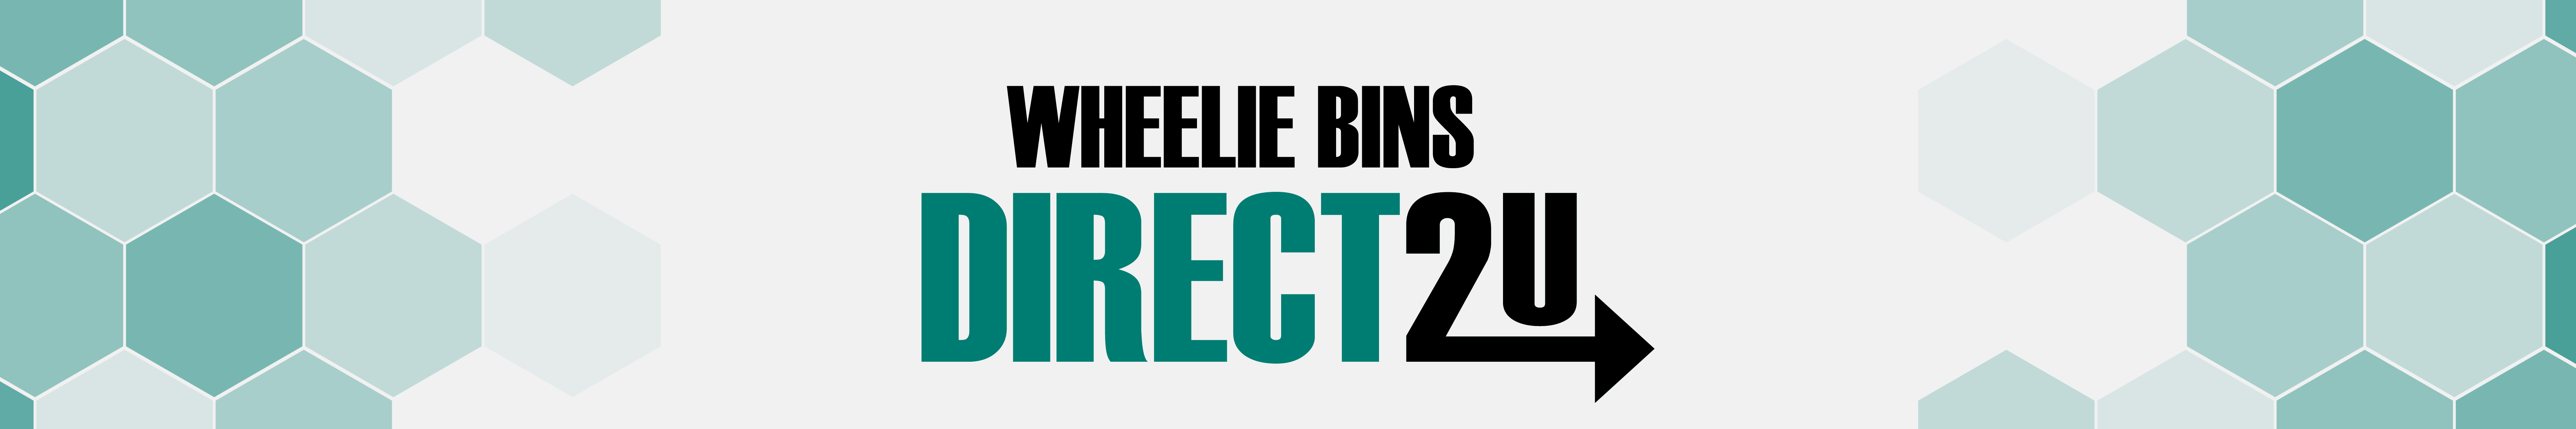 Wheelie Bins Blog